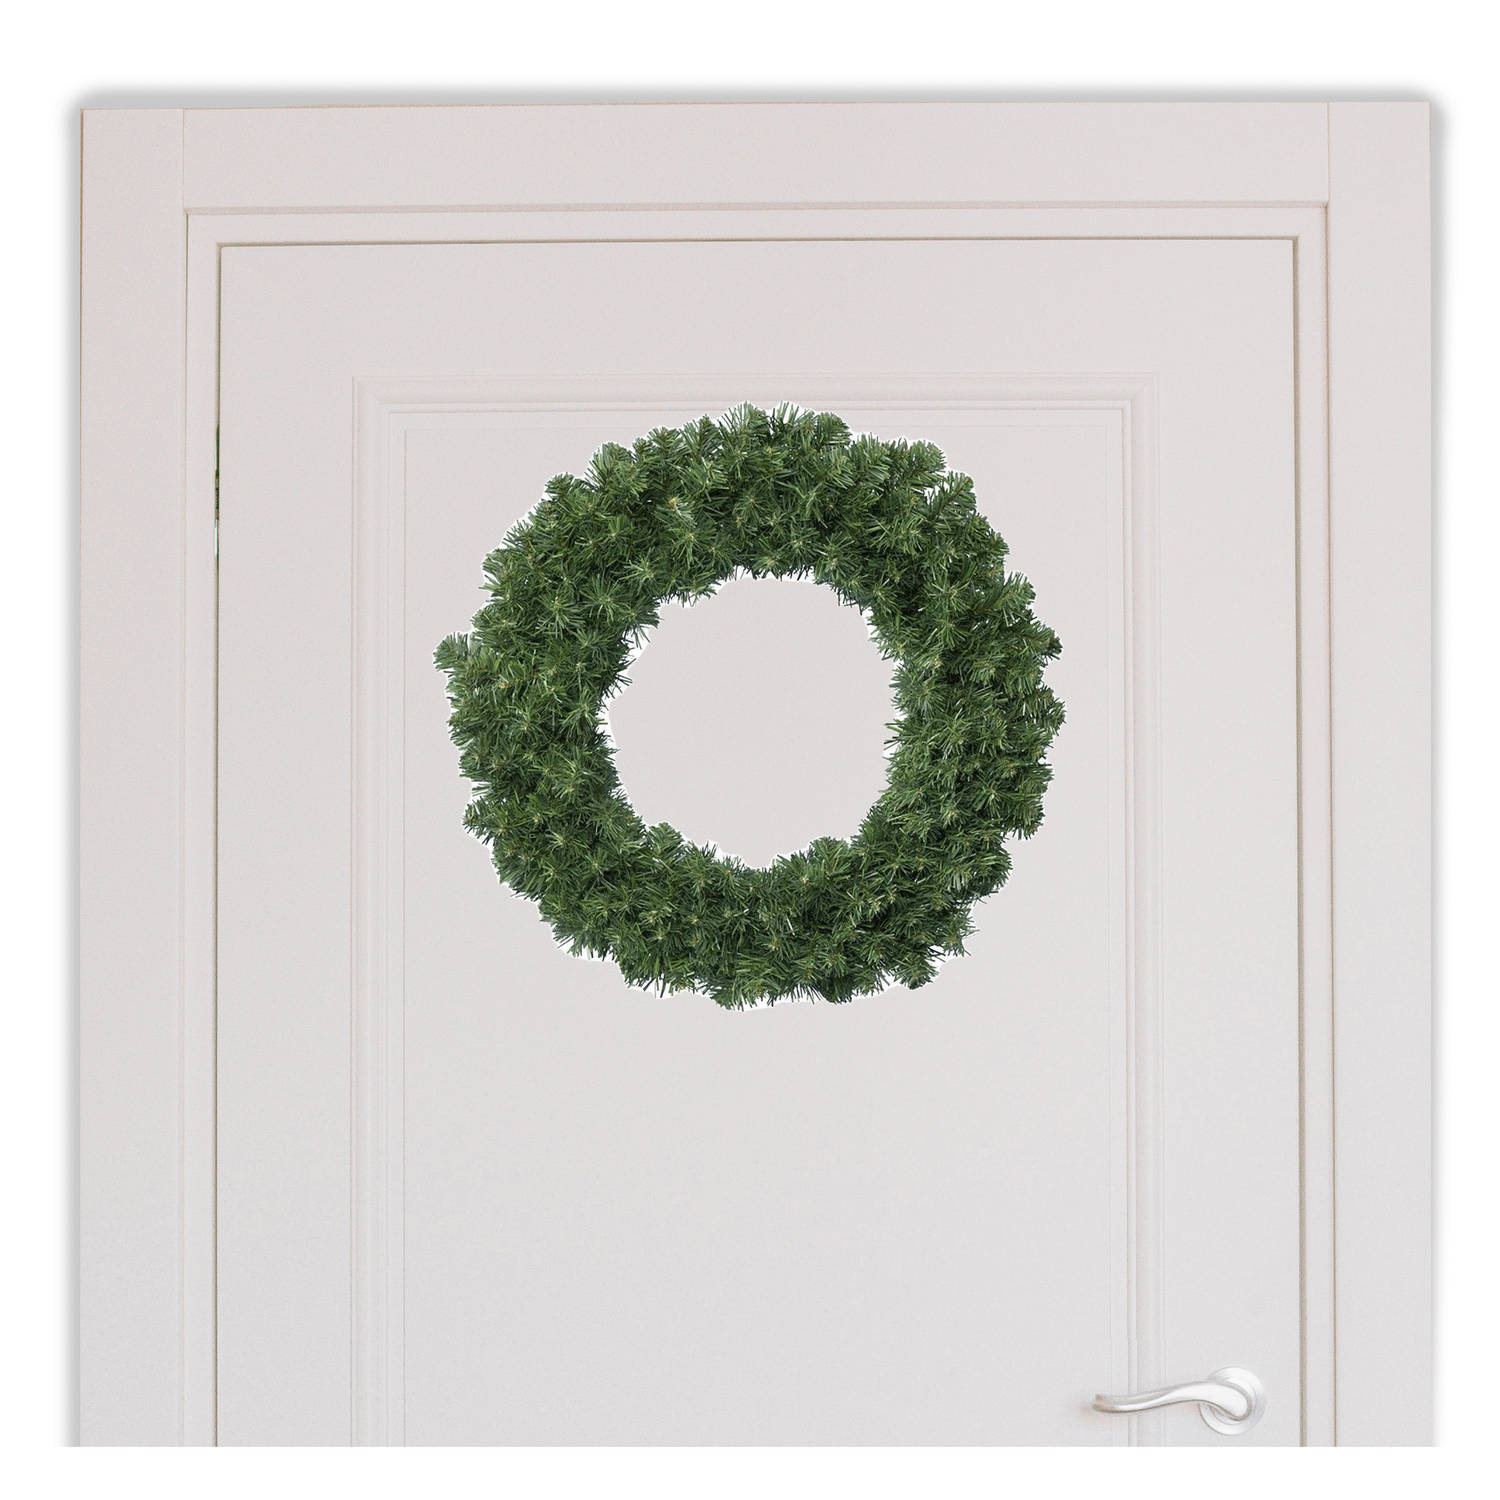 Voordelige groene deurkransen kerstkransen 50 cm Kerstkransen